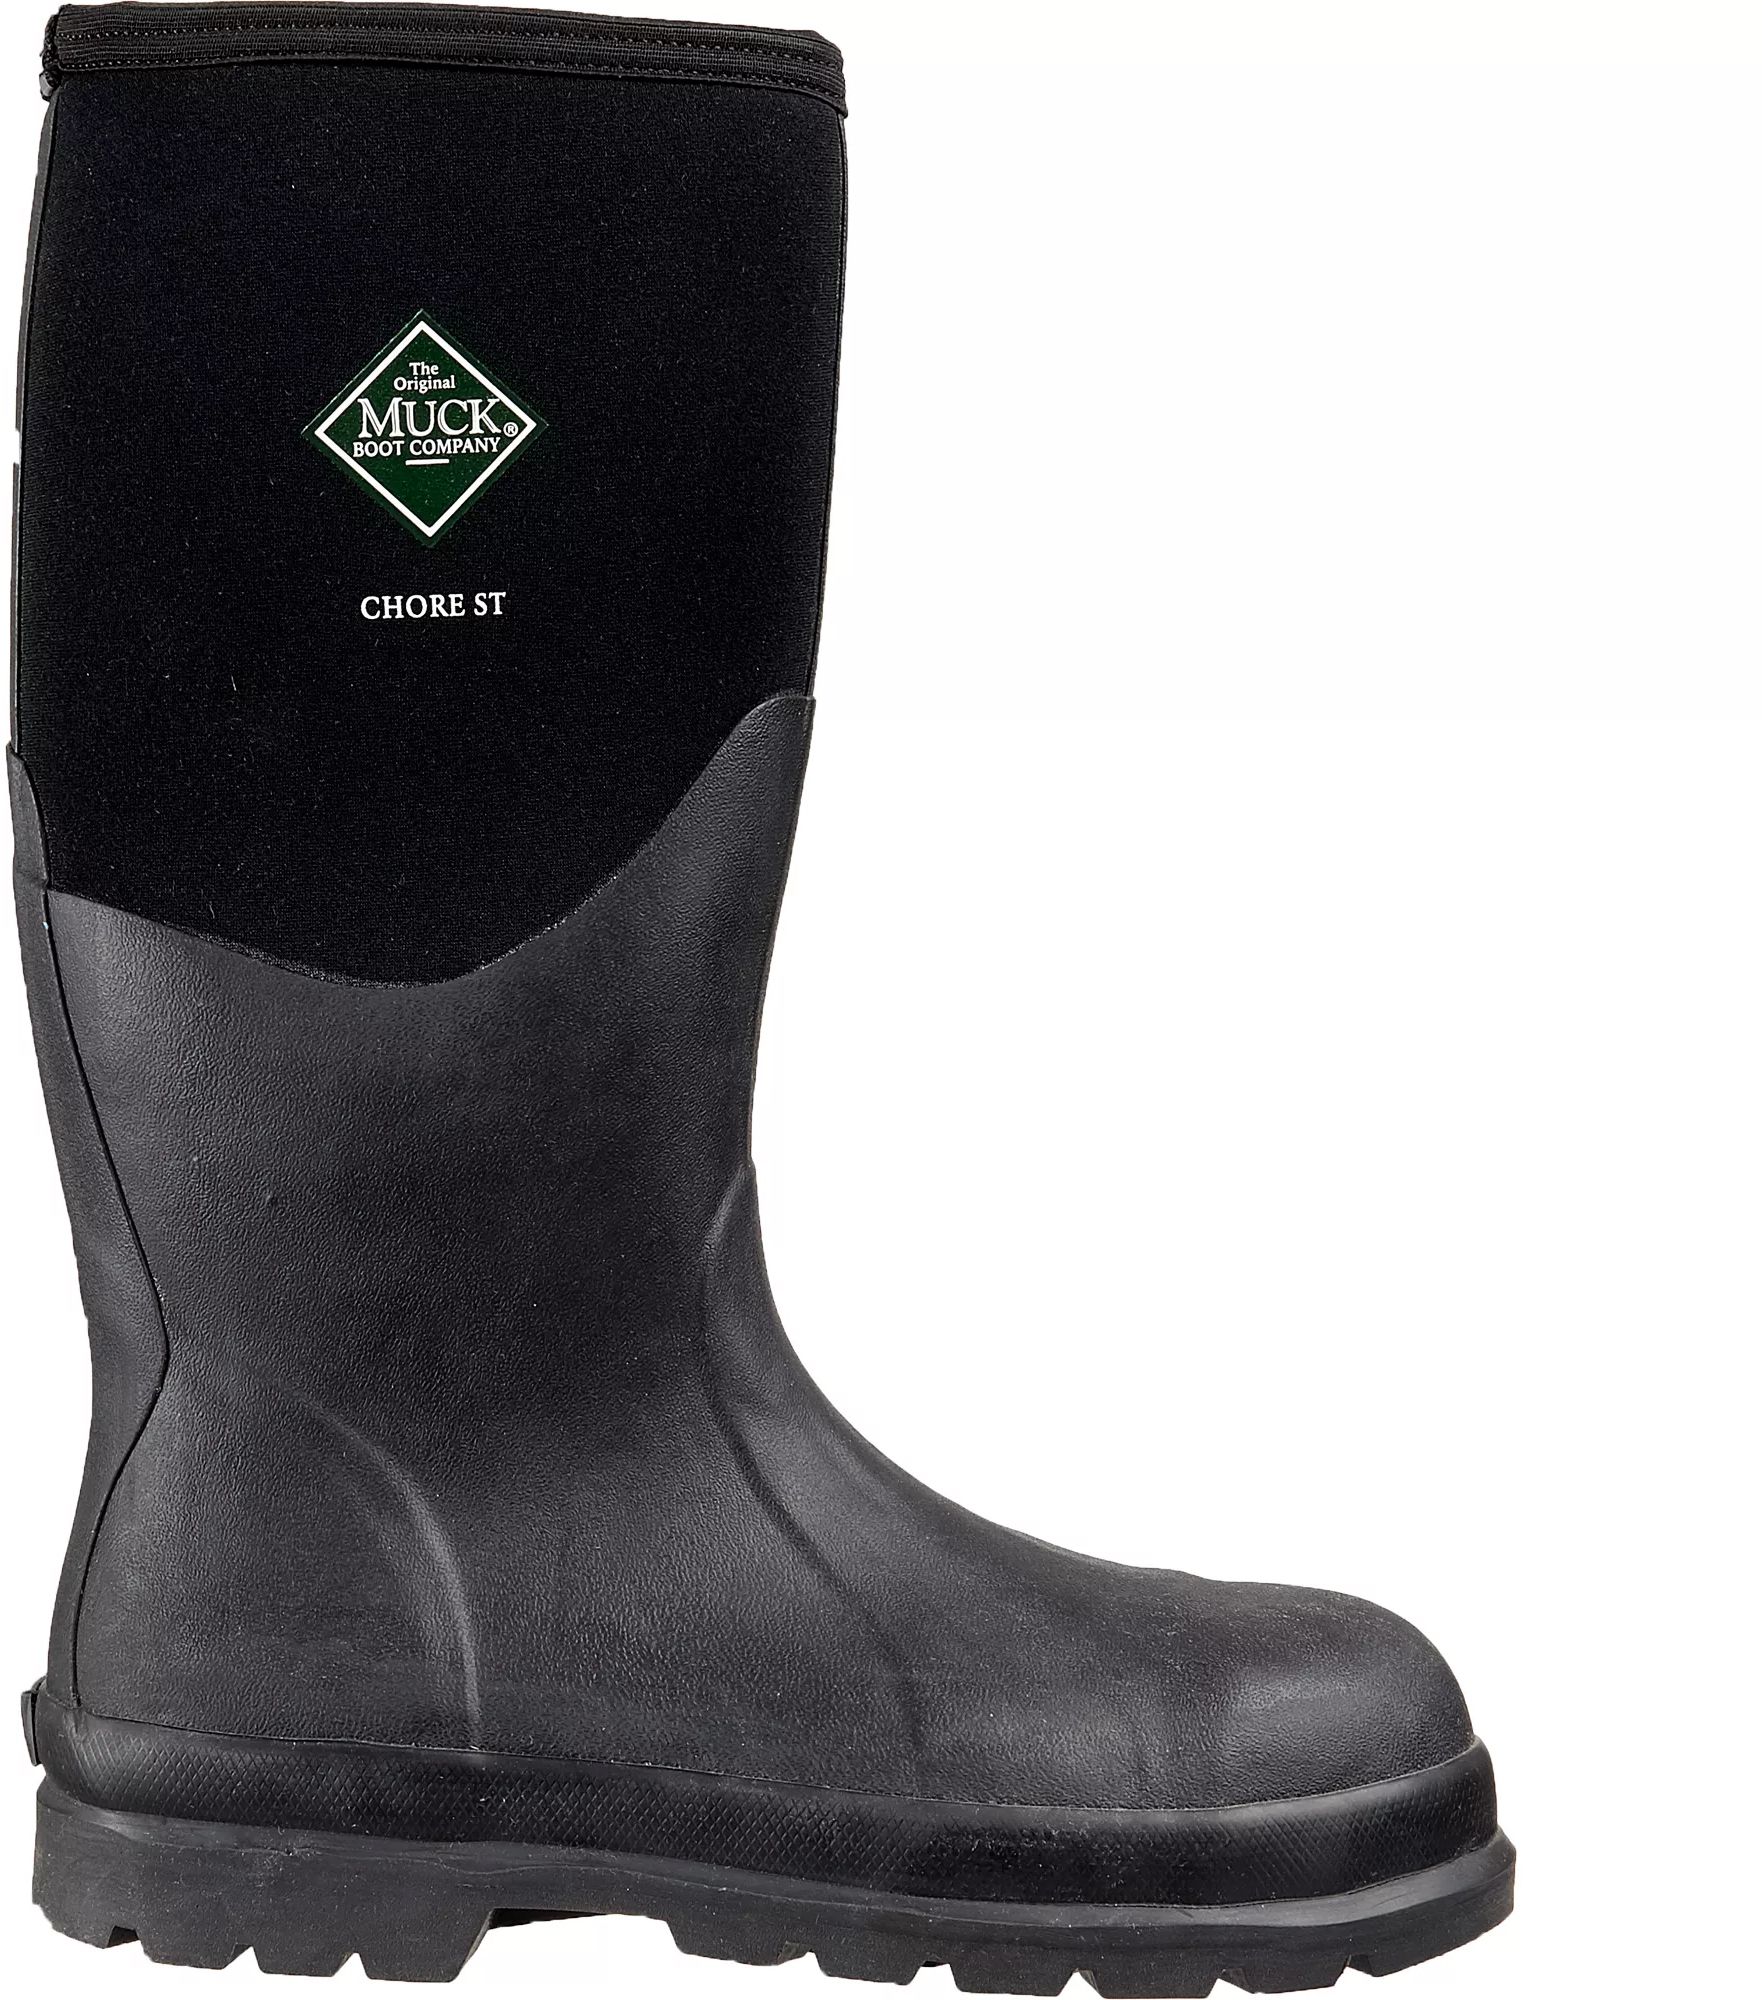 muck boots men's arctic sport steel toe waterproof work boots